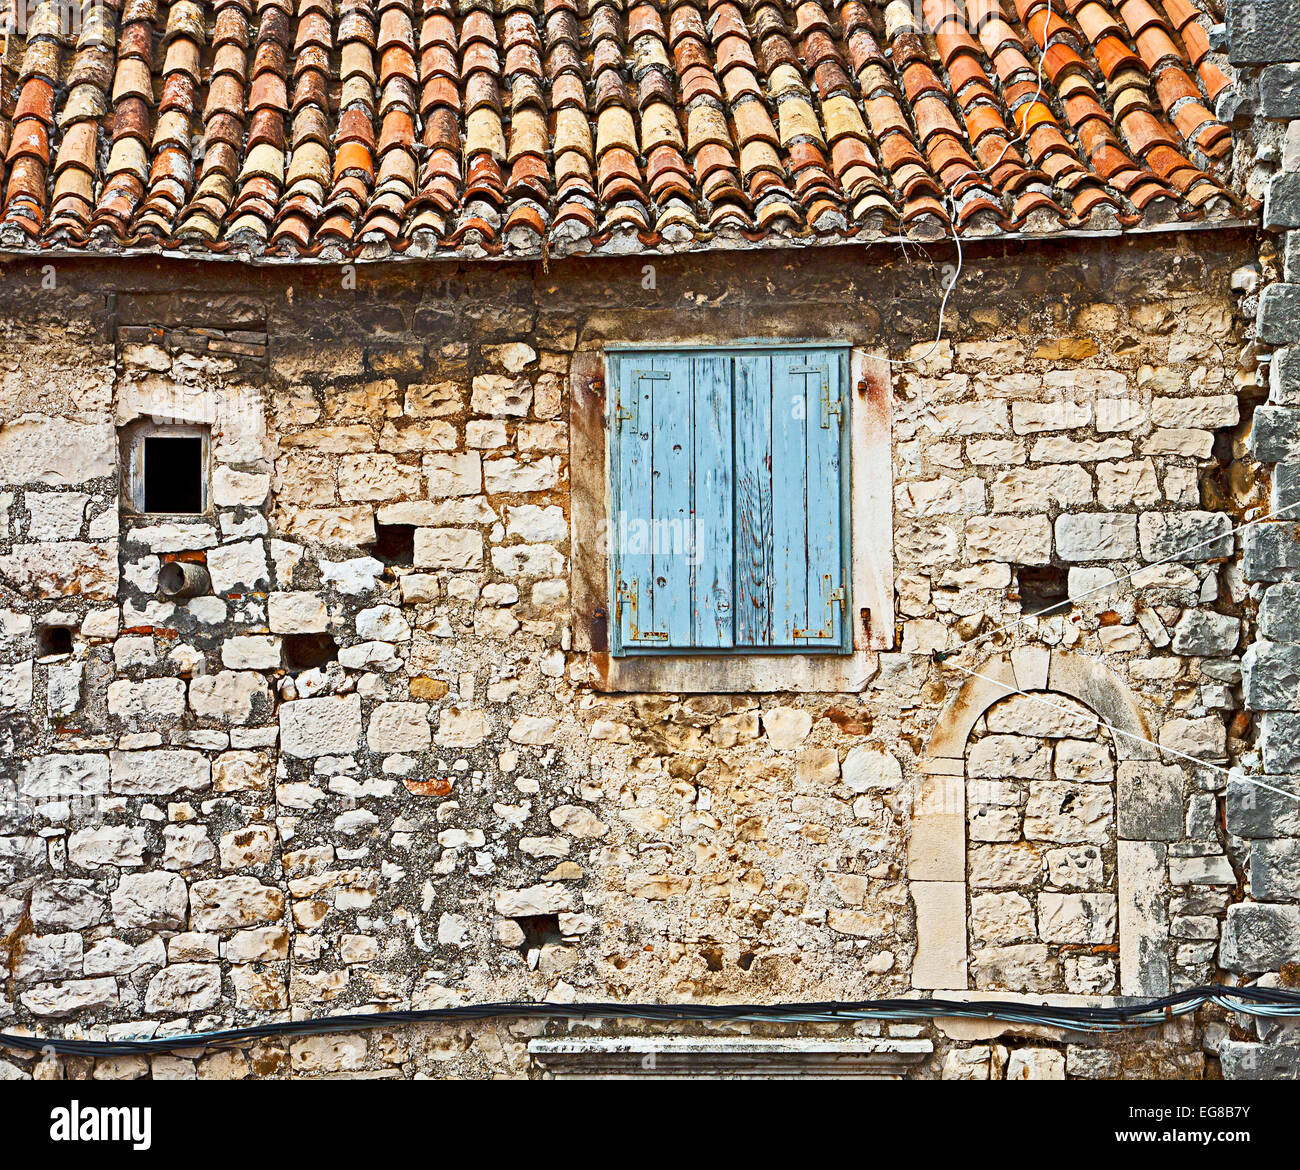 Fassade des alten dalmatinischen Haus aus Mörtel und Stein-Blöcke mit gekrümmten roten gefliest Dach und Fenster mit hölzernen Jalousien geschlossen Stockfoto